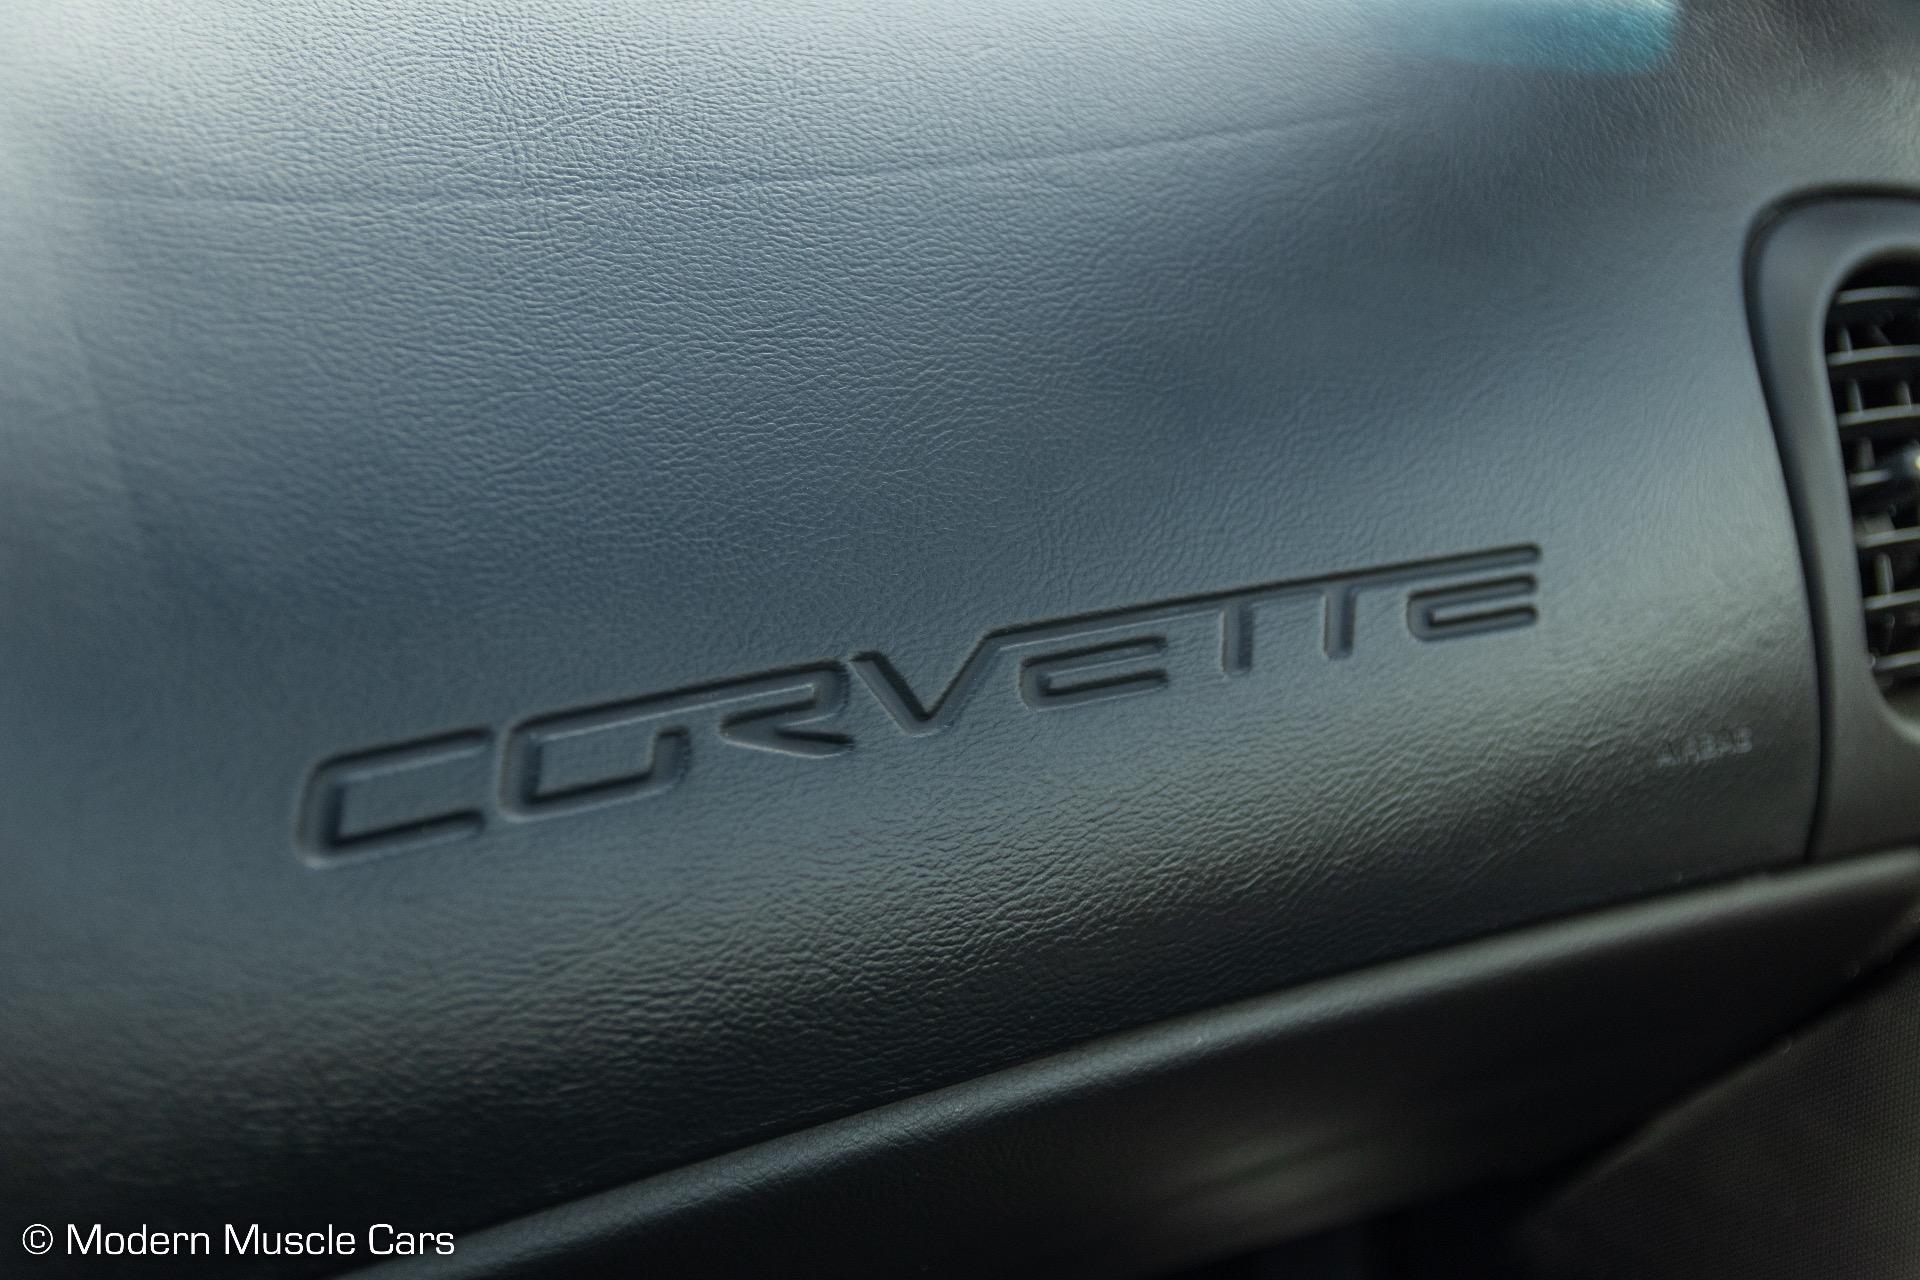 2011 CHEVROLET Corvette Coupe - $52,900